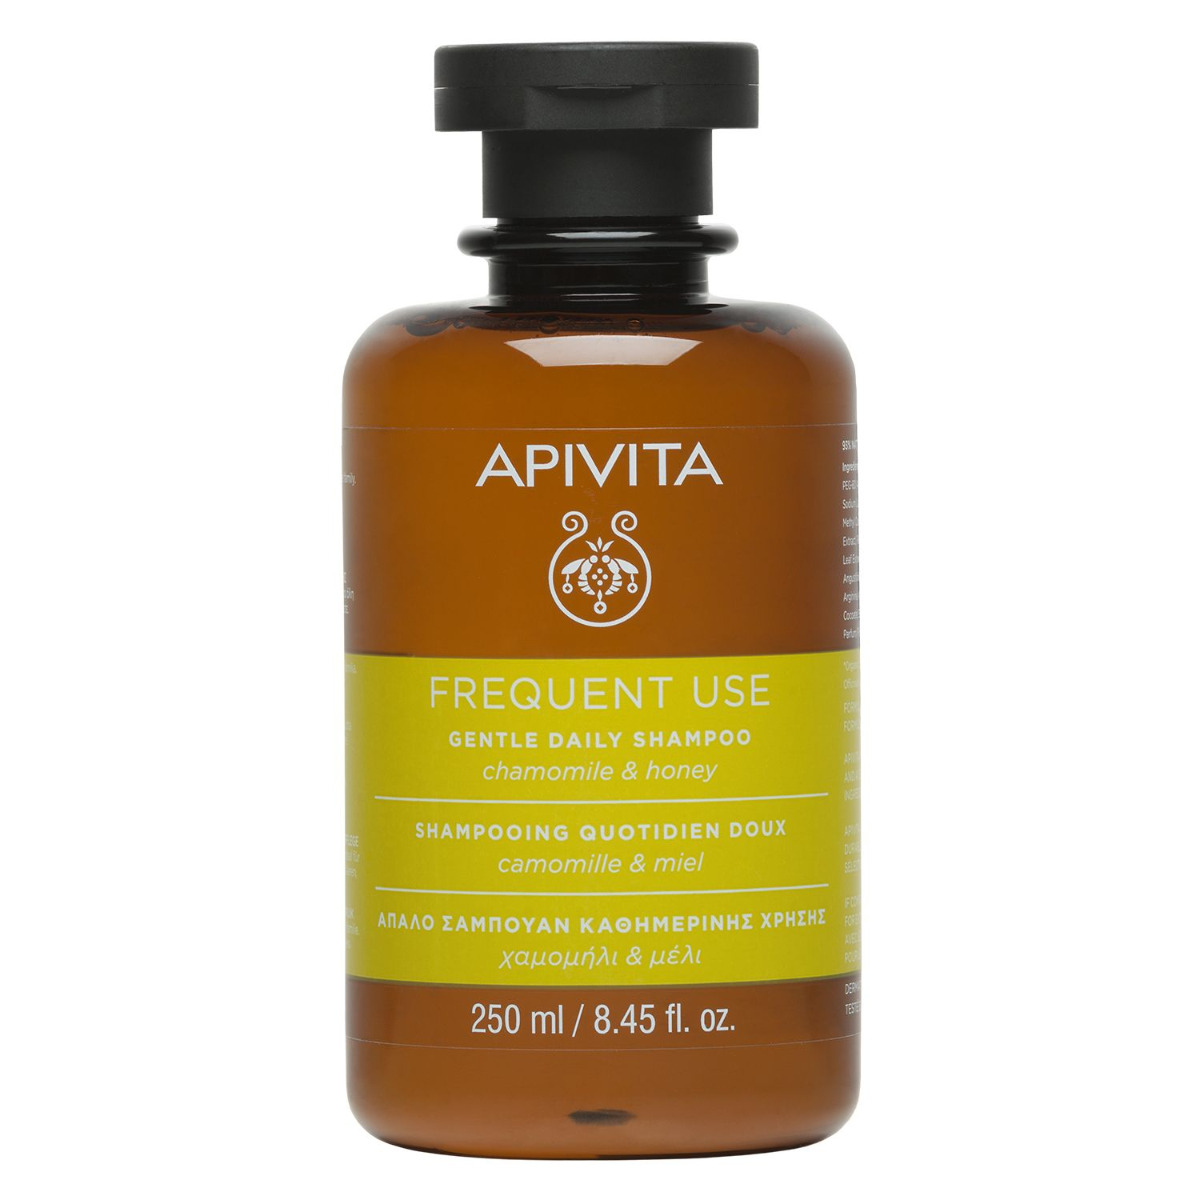 APIVITA Frequent Use jemný šampon pro každodenní použití 250 ml APIVITA